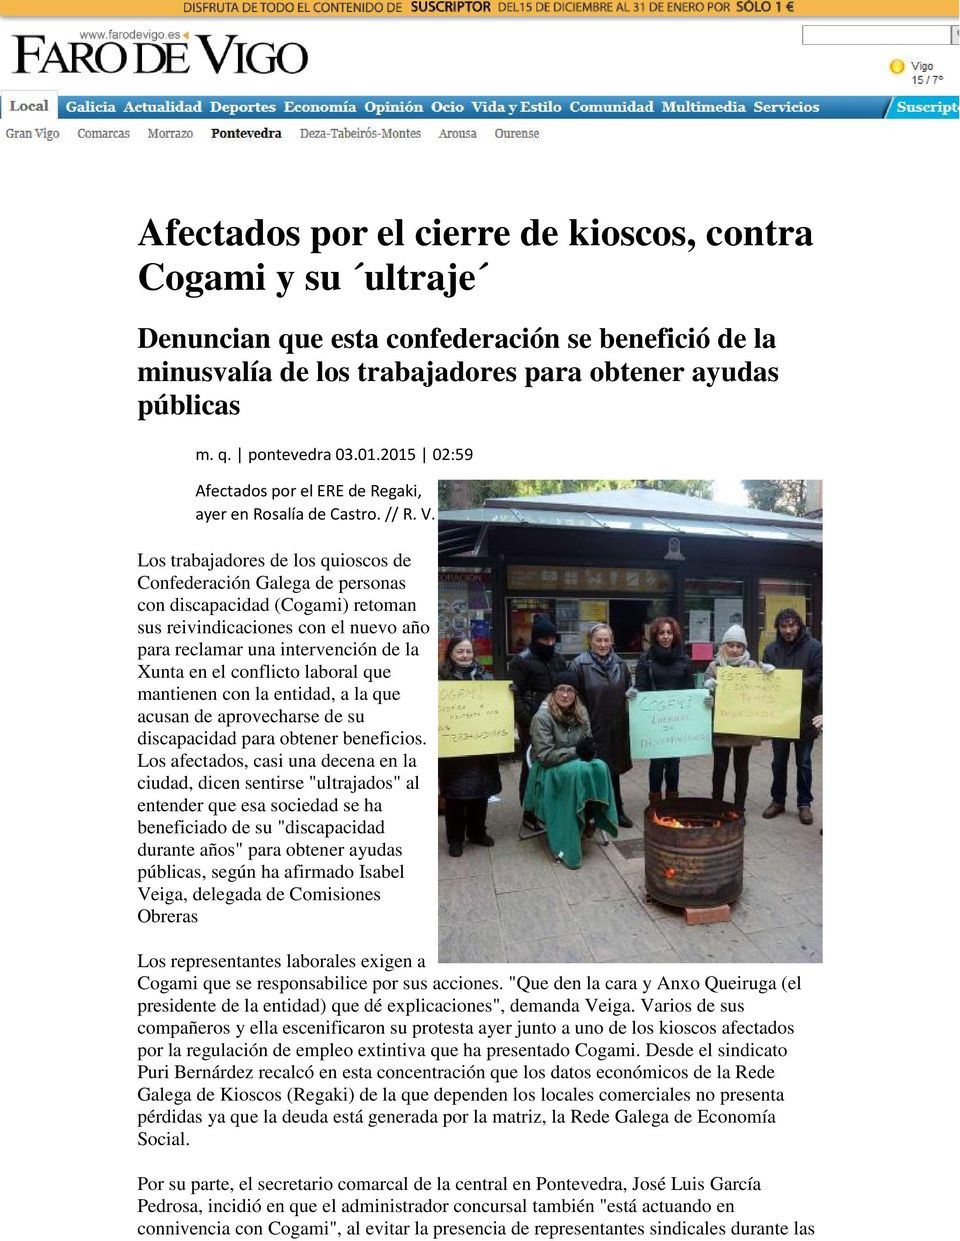 Los trabajadores de los quioscos de Confederación Galega de personas con discapacidad (Cogami) retoman sus reivindicaciones con el nuevo año para reclamar una intervención de la Xunta en el conflicto